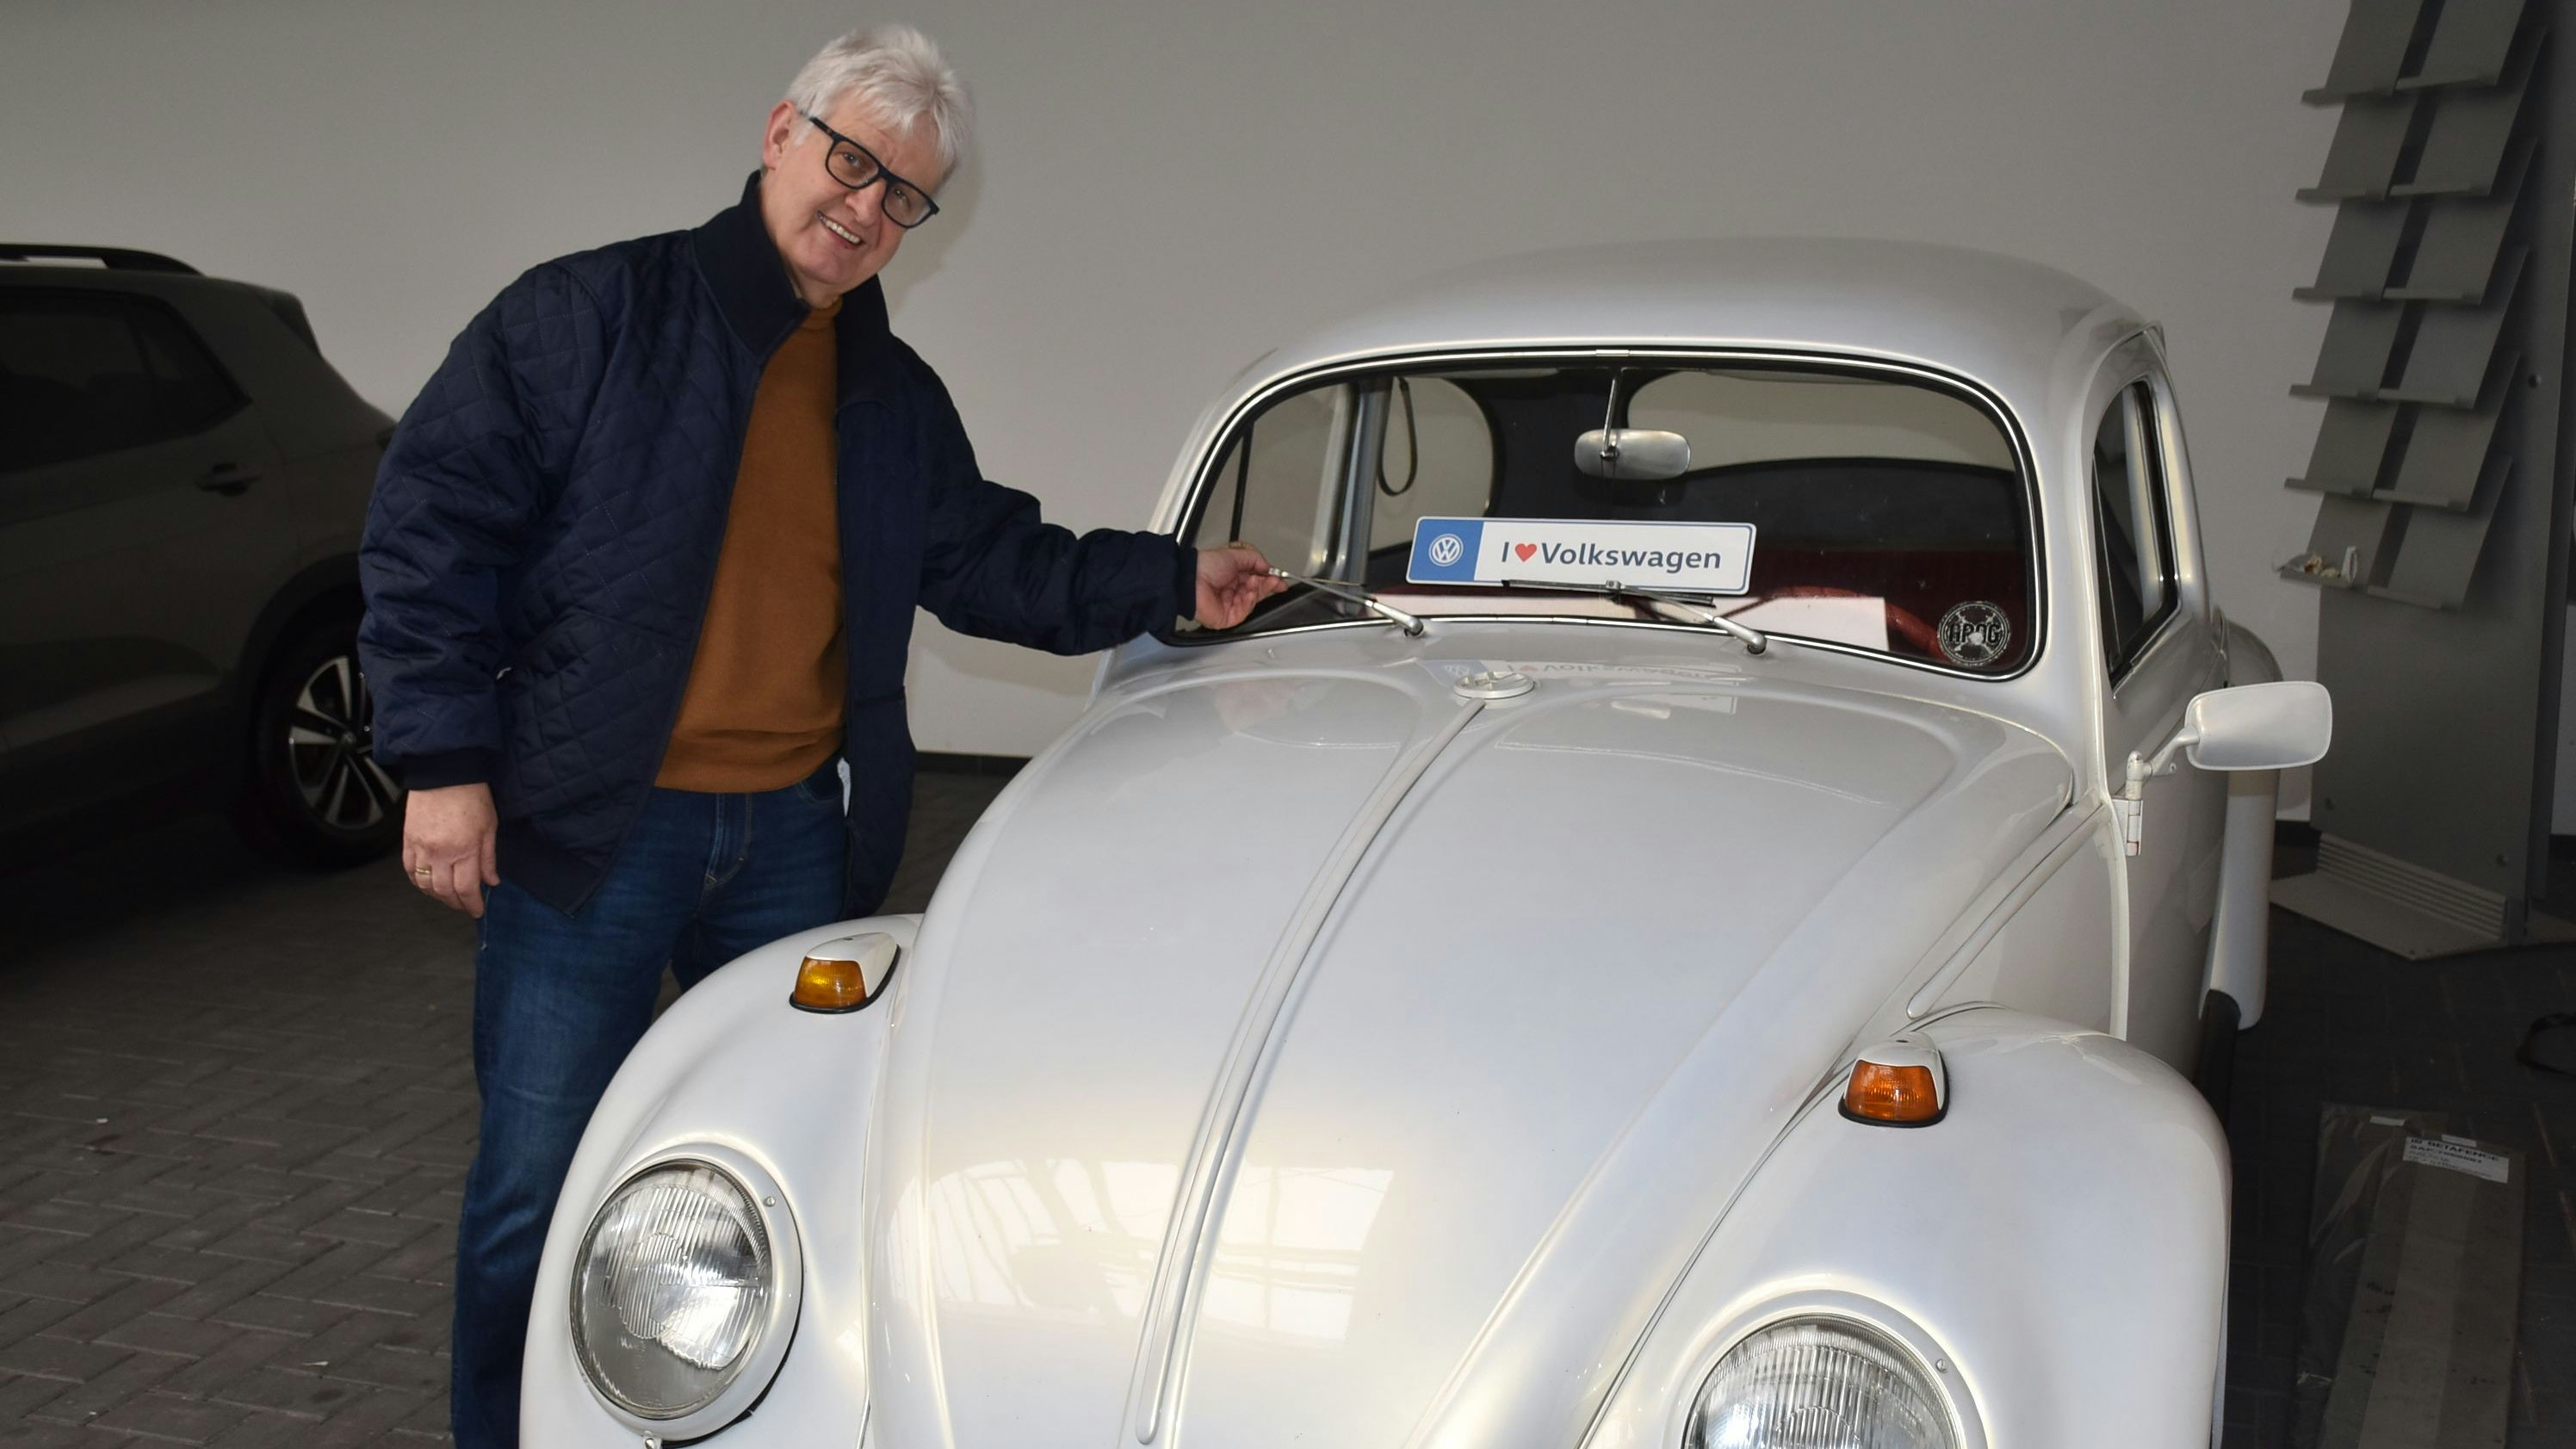 Schluss nach fast 5 Jahrzehnten: Günther Preuß hat beinahe ein halbes Jahrhundert im Autohaus Goda gearbeitet. Nun ist er in den Ruhestand getreten. Foto: Lammert